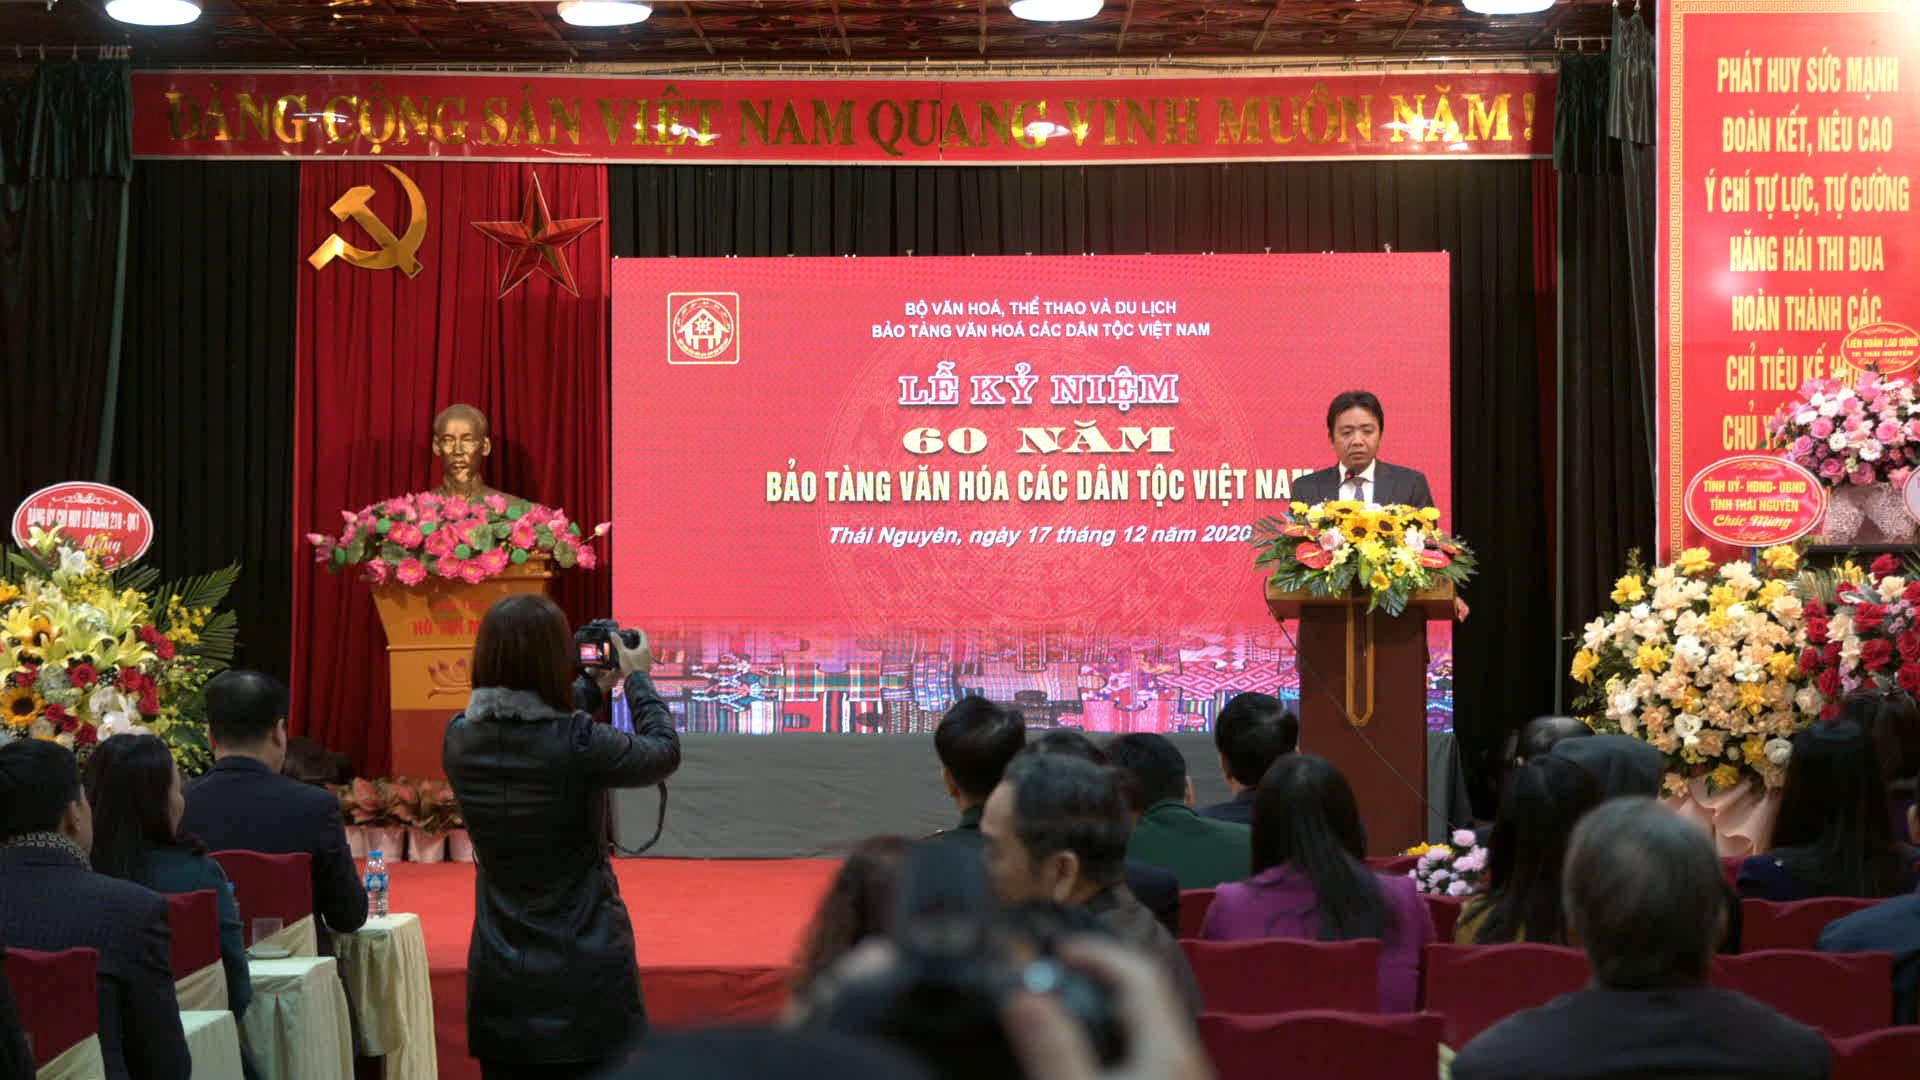 Kỷ niệm 60 năm thành lập Bảo tàng Văn hóa các dân tộc Việt Nam - Ảnh 1.